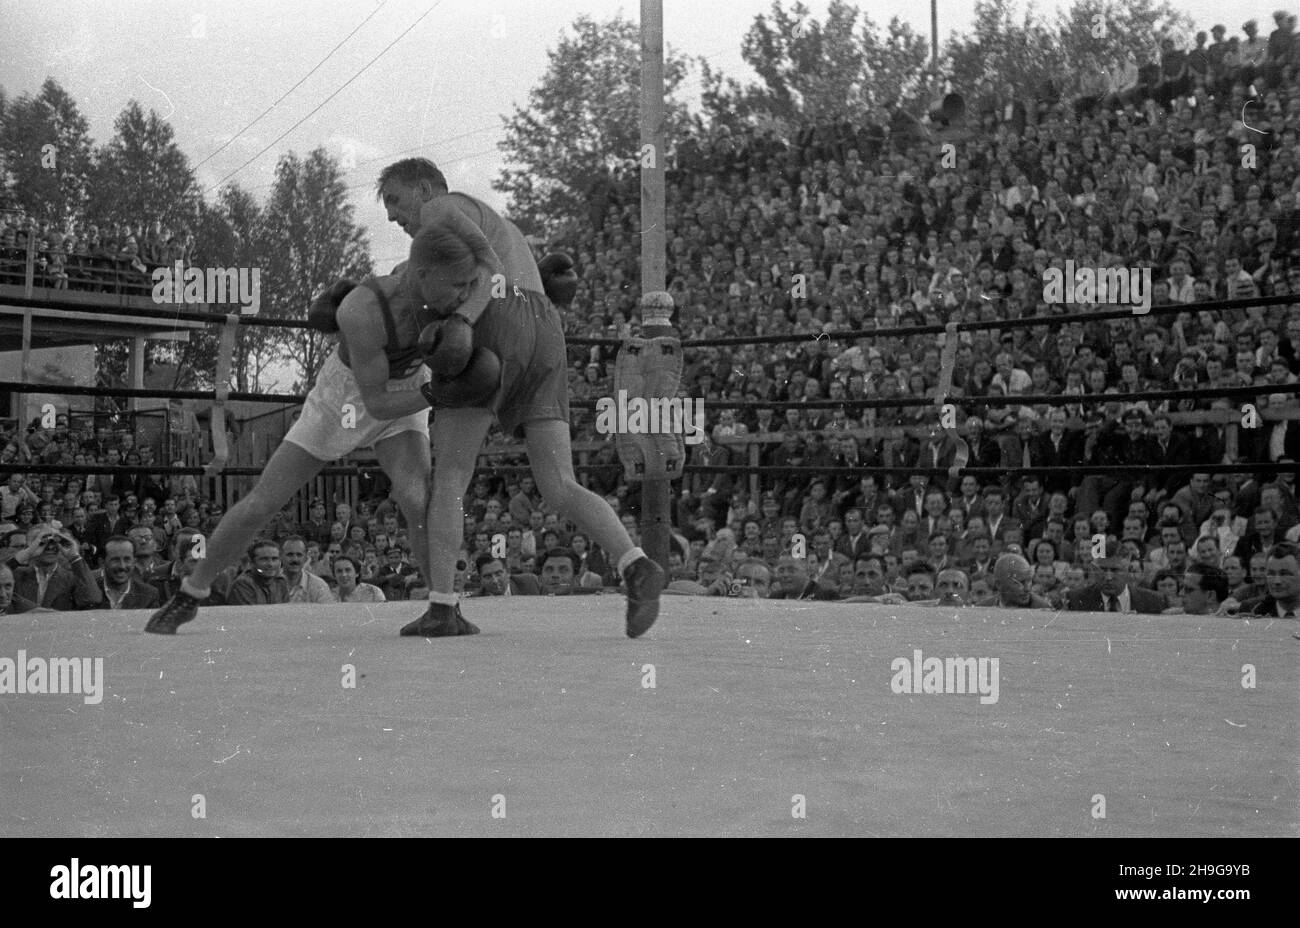 Warszawa, 1948-06-12. Mecz bokserski Polska - Finlandia rozegrany na kortach Legii, zakoñczony wynikiem 8:8. Nz. pojedynek w wadze lekkiej Antoniego Komudy (P) z Toivo Heikinnenem (L), zakoñczony zwyciêstwem Polaka. as  PAP      Warsaw, June 12, 1948. A Poland-Finland boxing mach held on Legia courts ended in a draw 8:8. Pictured: a lightweight fight between Antoni Komuda (right) and Toivo Heikinnen (left) which ended in Pole's victory.  as  PAP Stock Photo